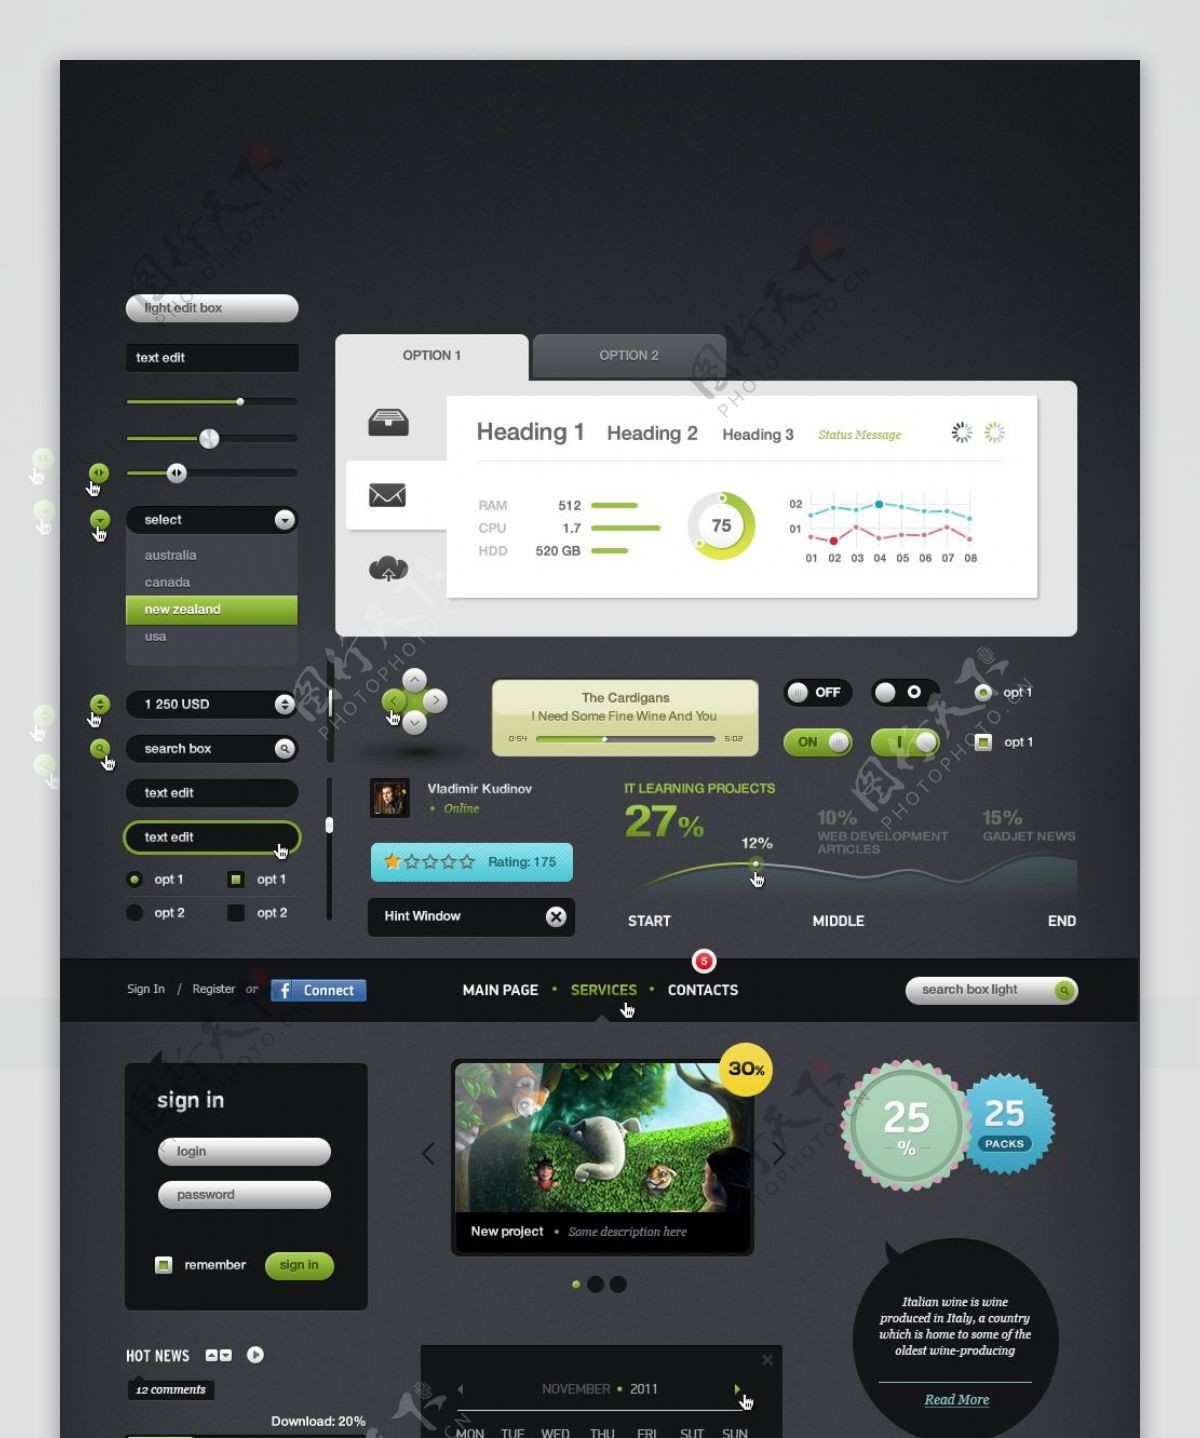 绿色系精美网页UI设计界面素材